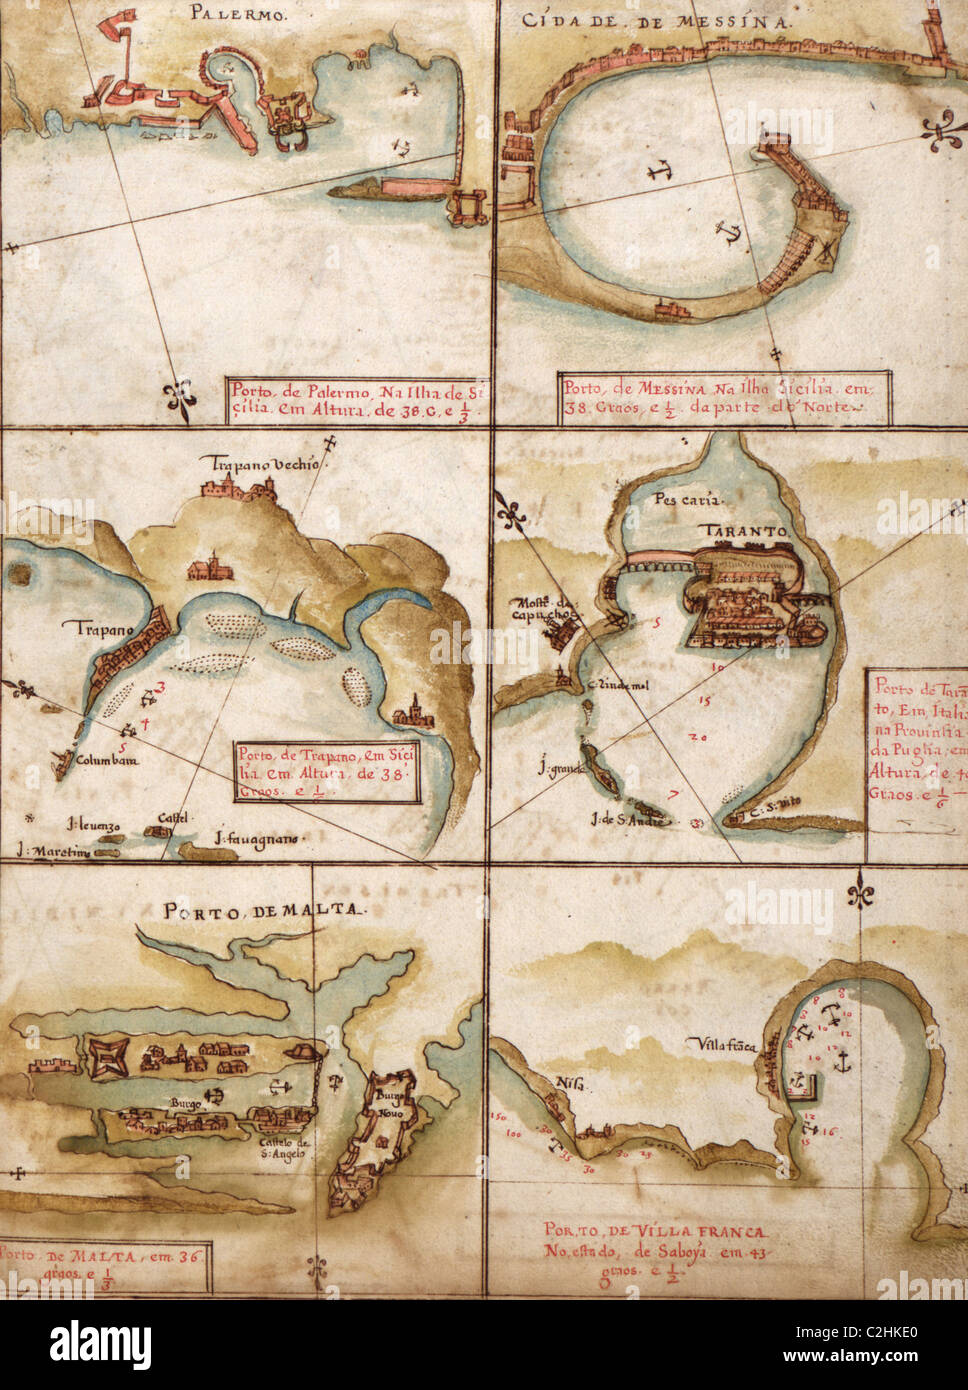 Mapas portugueses del Mediterráneo - 1630 Foto de stock